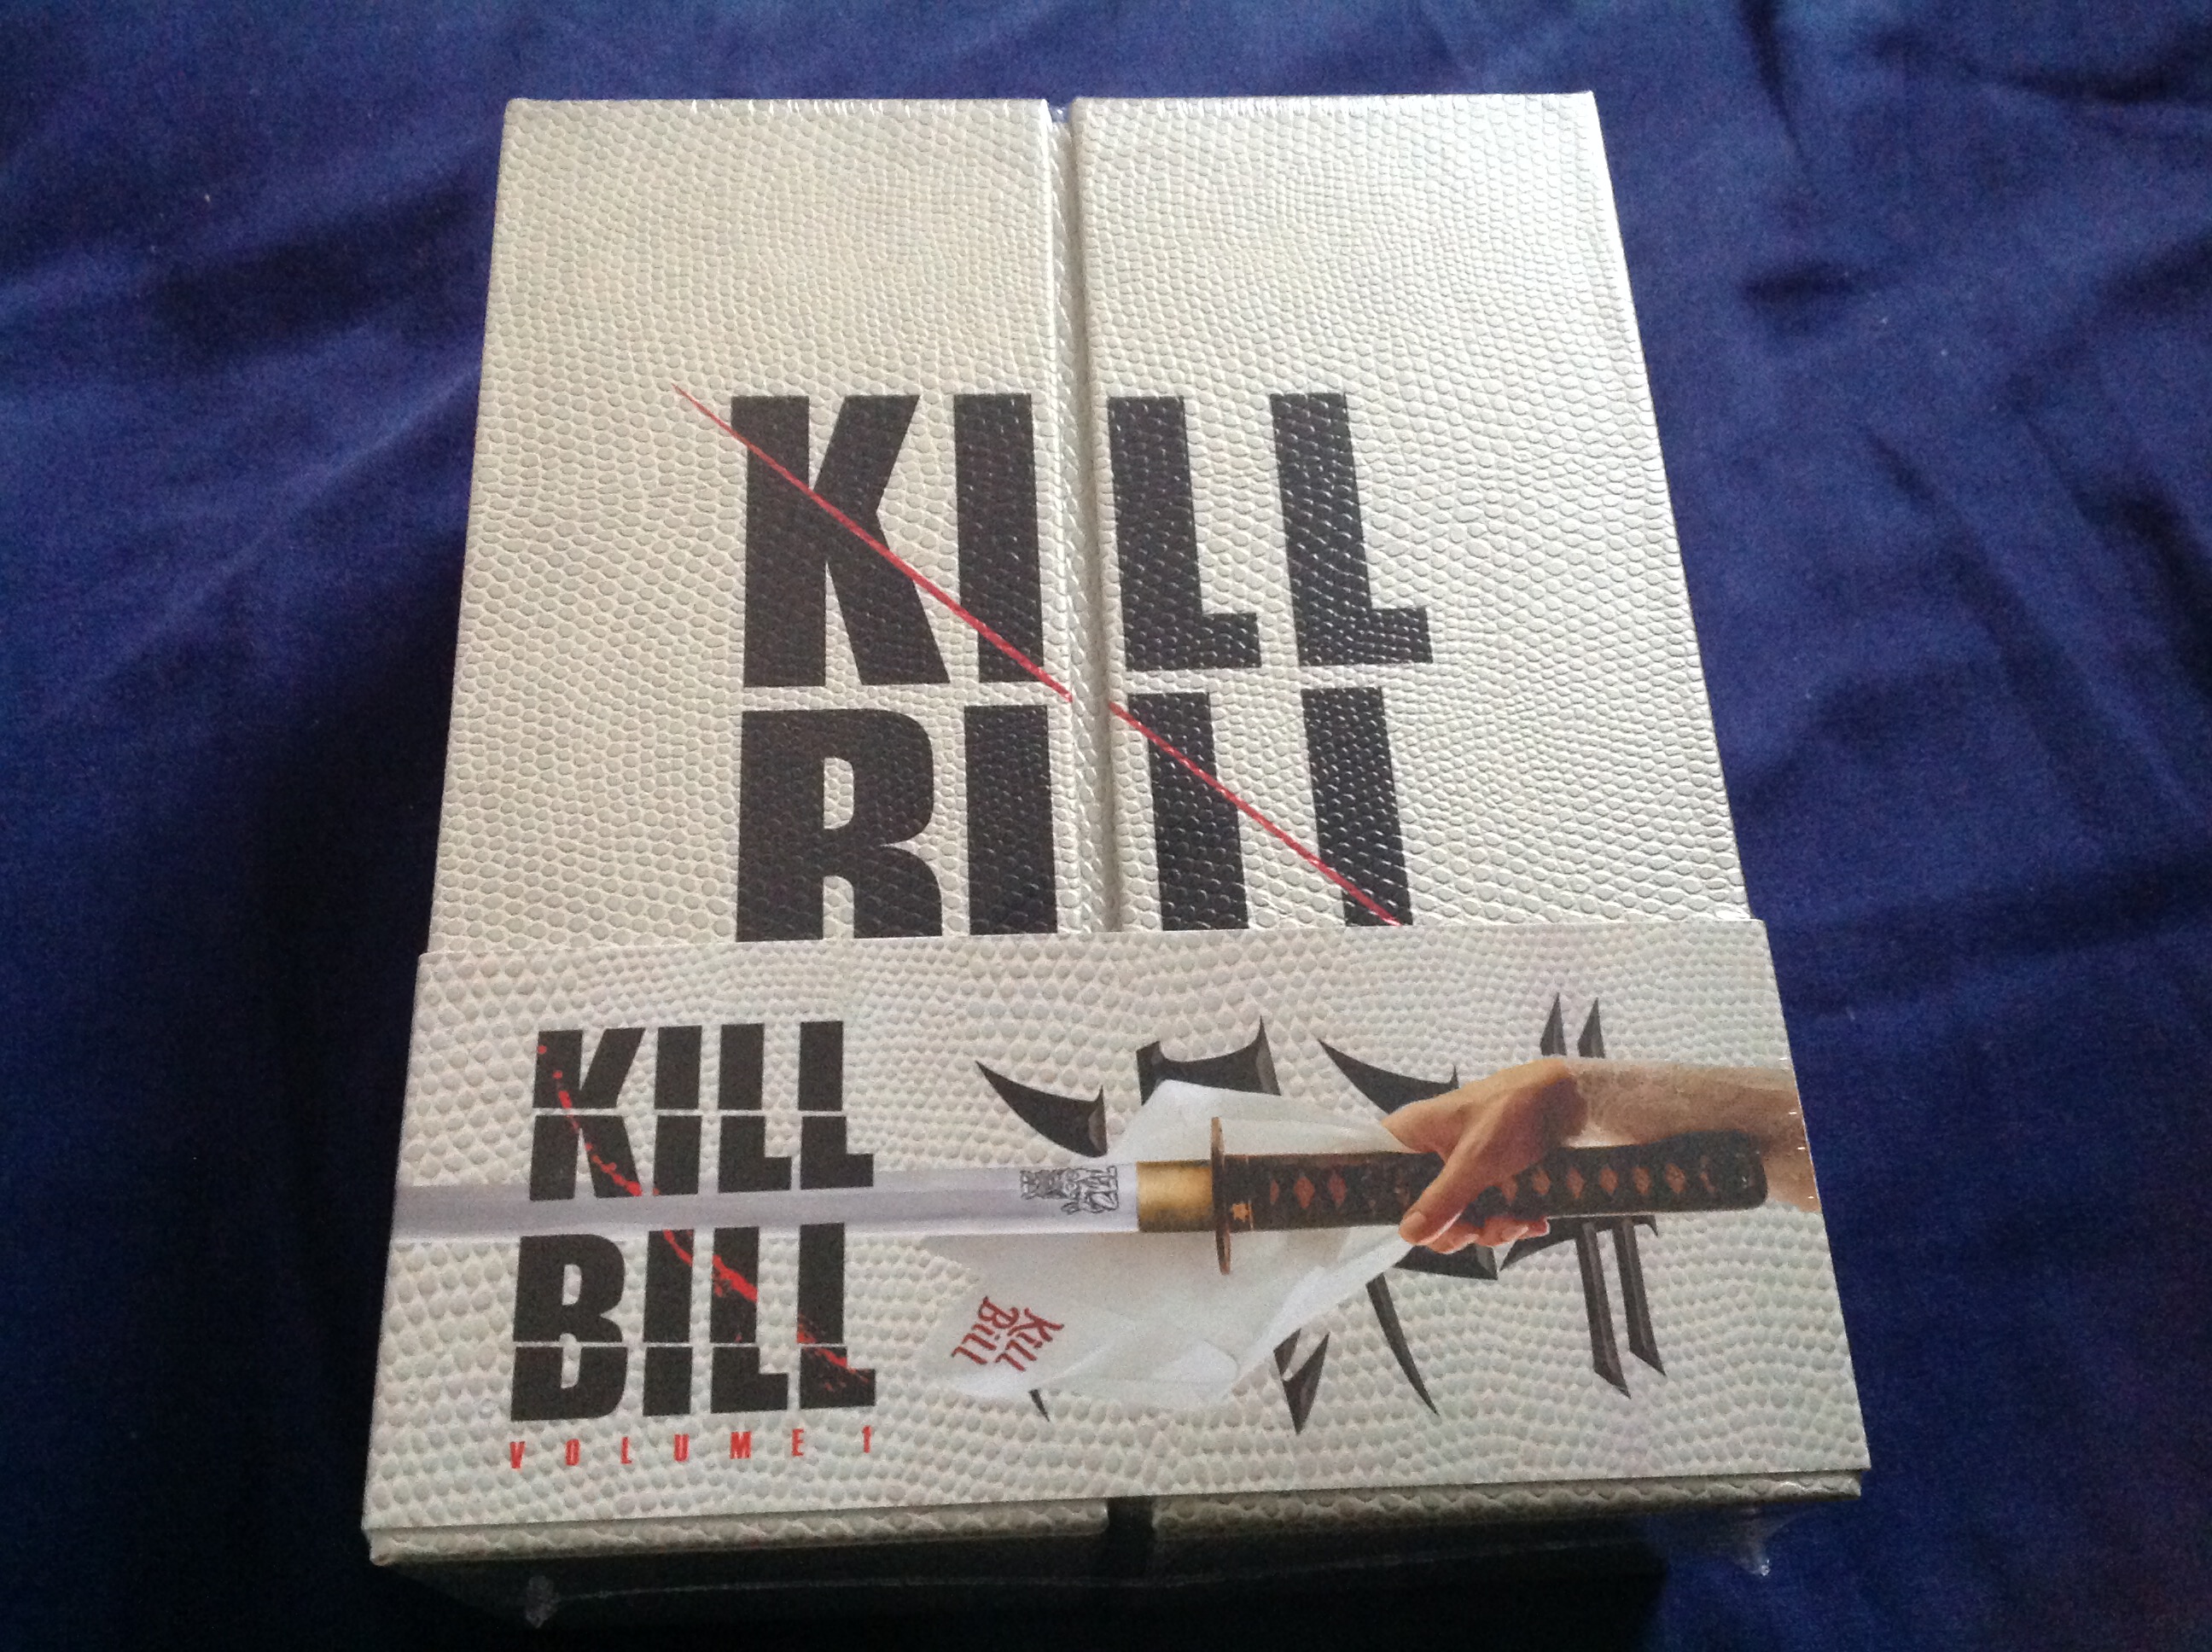 Kill bill nova